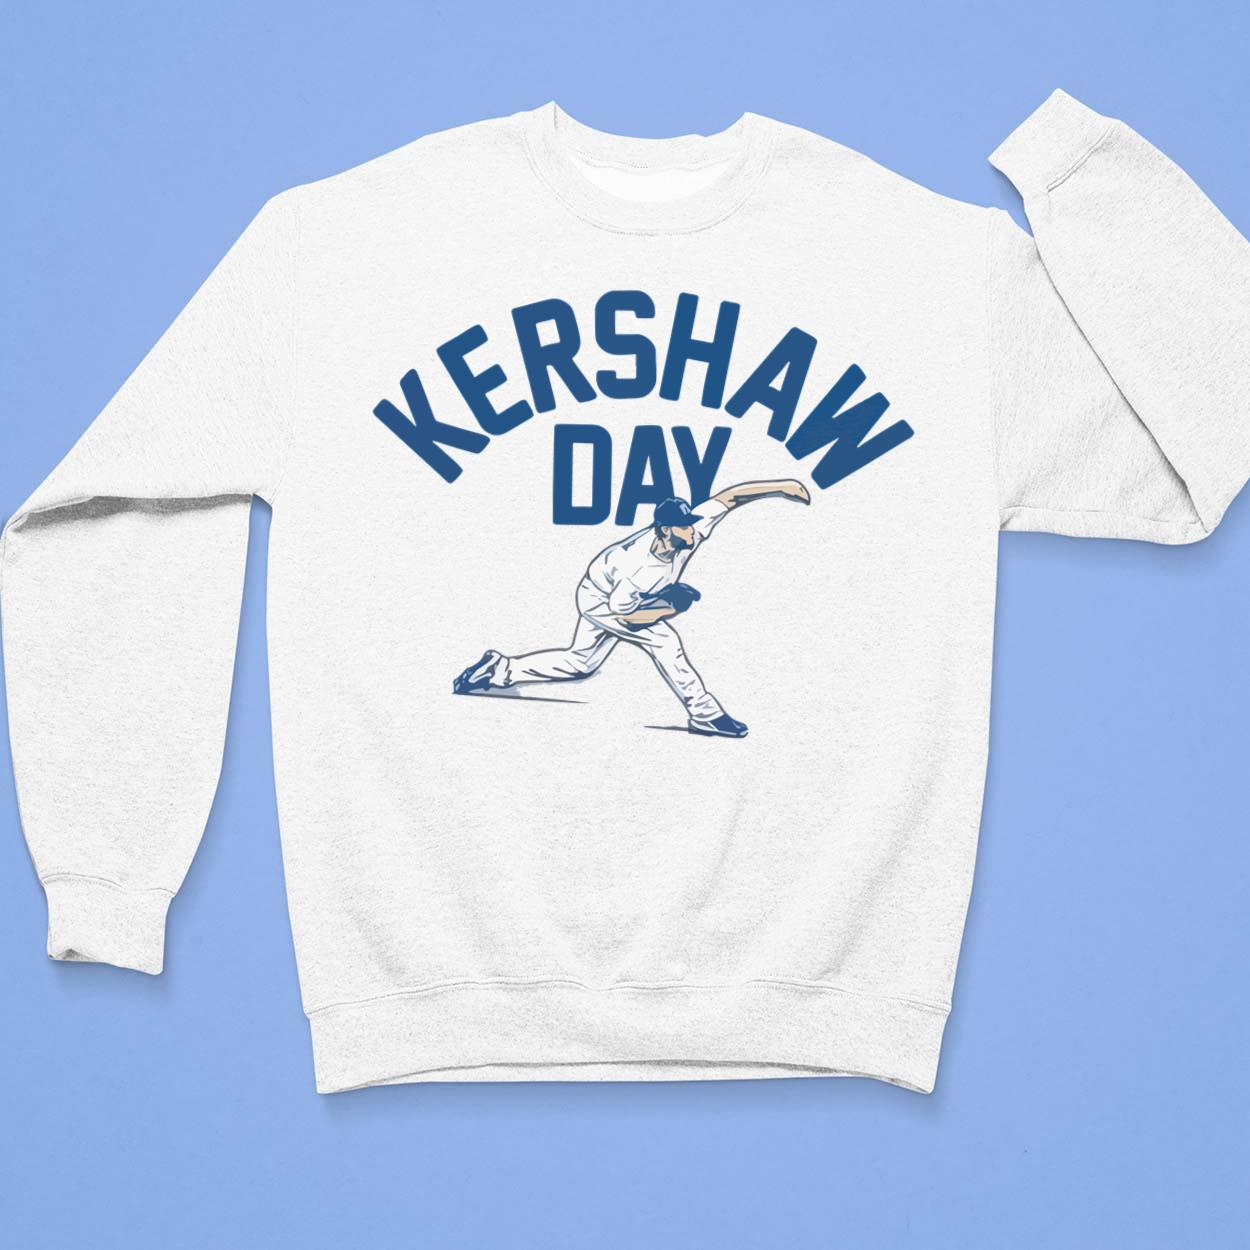 Official Clayton Kershaw Jersey, Clayton Kershaw Shirts, Baseball Apparel,  Clayton Kershaw Gear